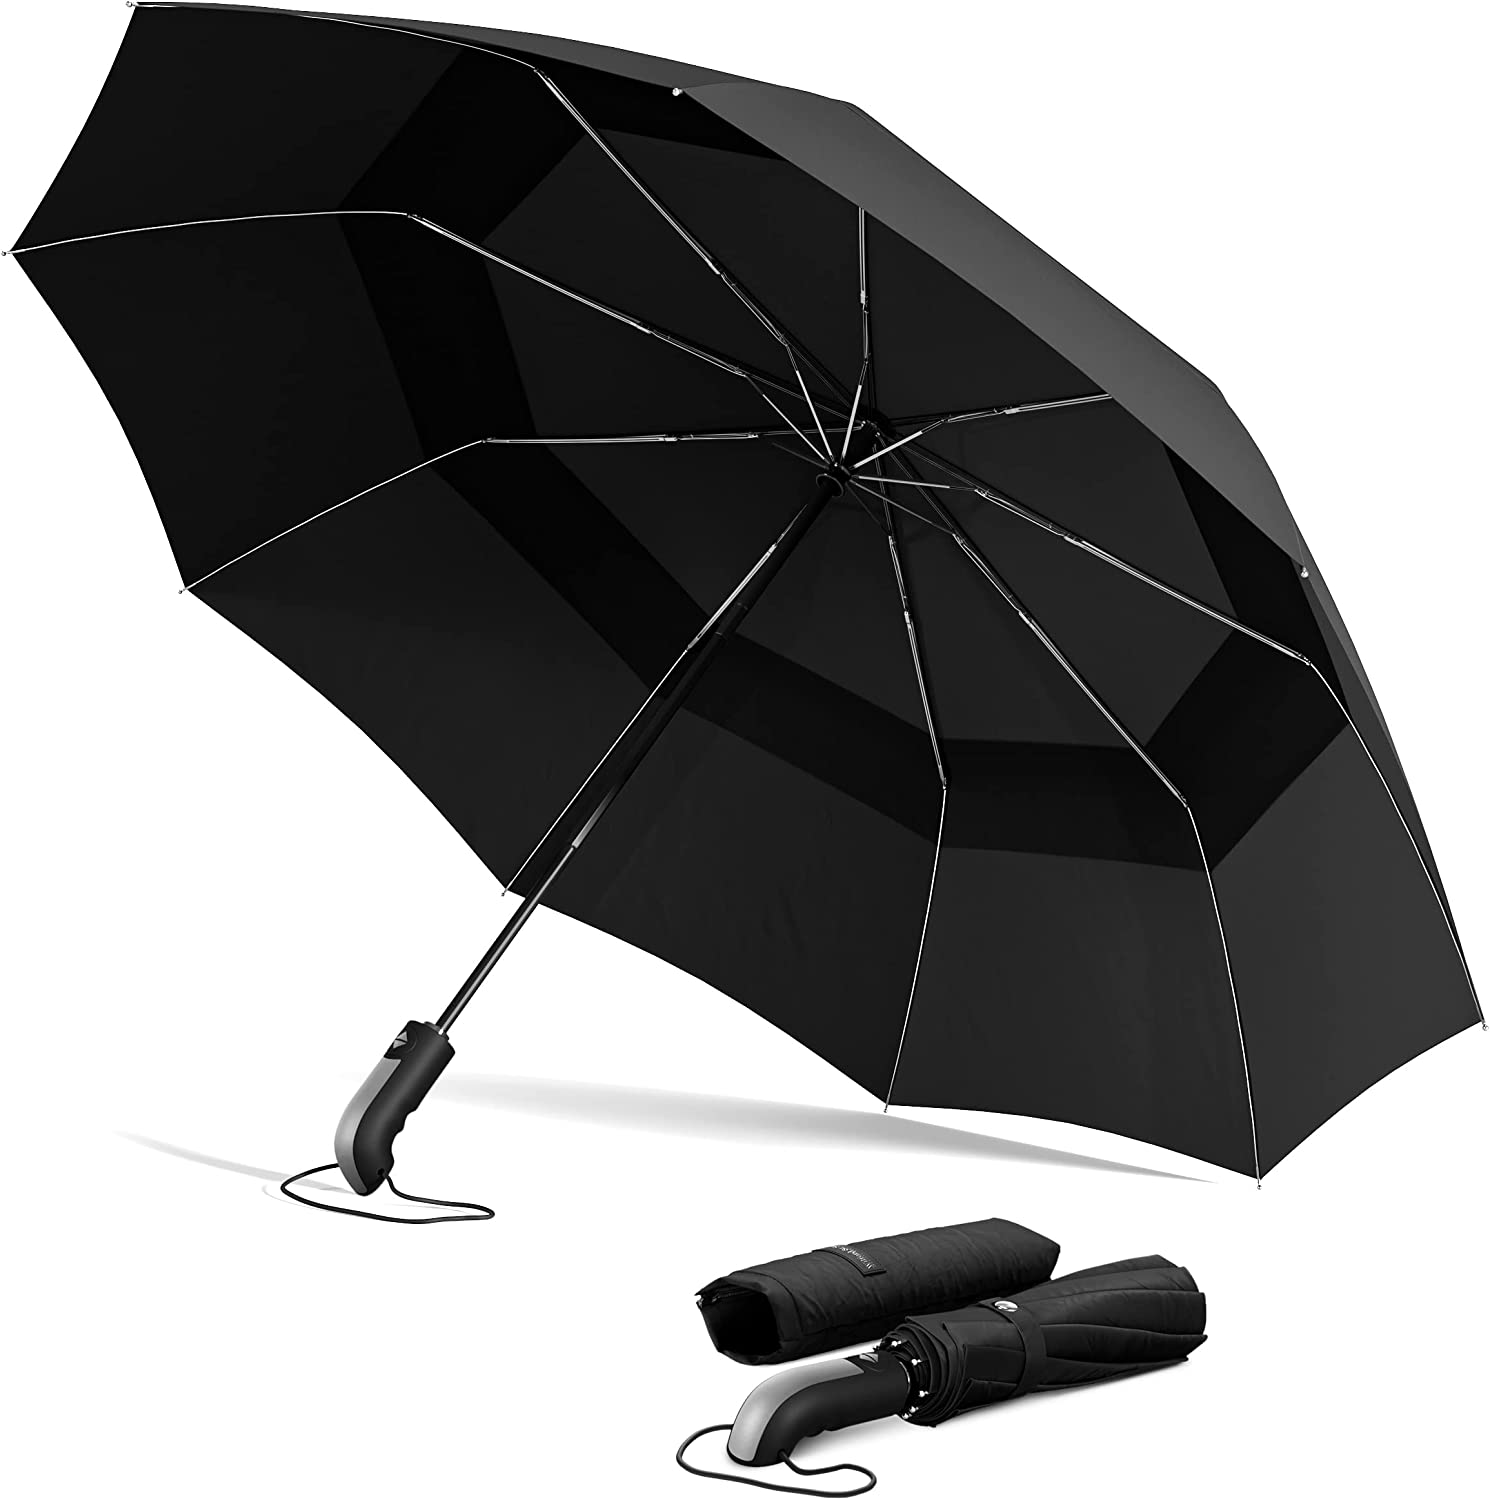 Wilford & Sons Regenschirm Taschenschirm Sturmfest schwarz/silber